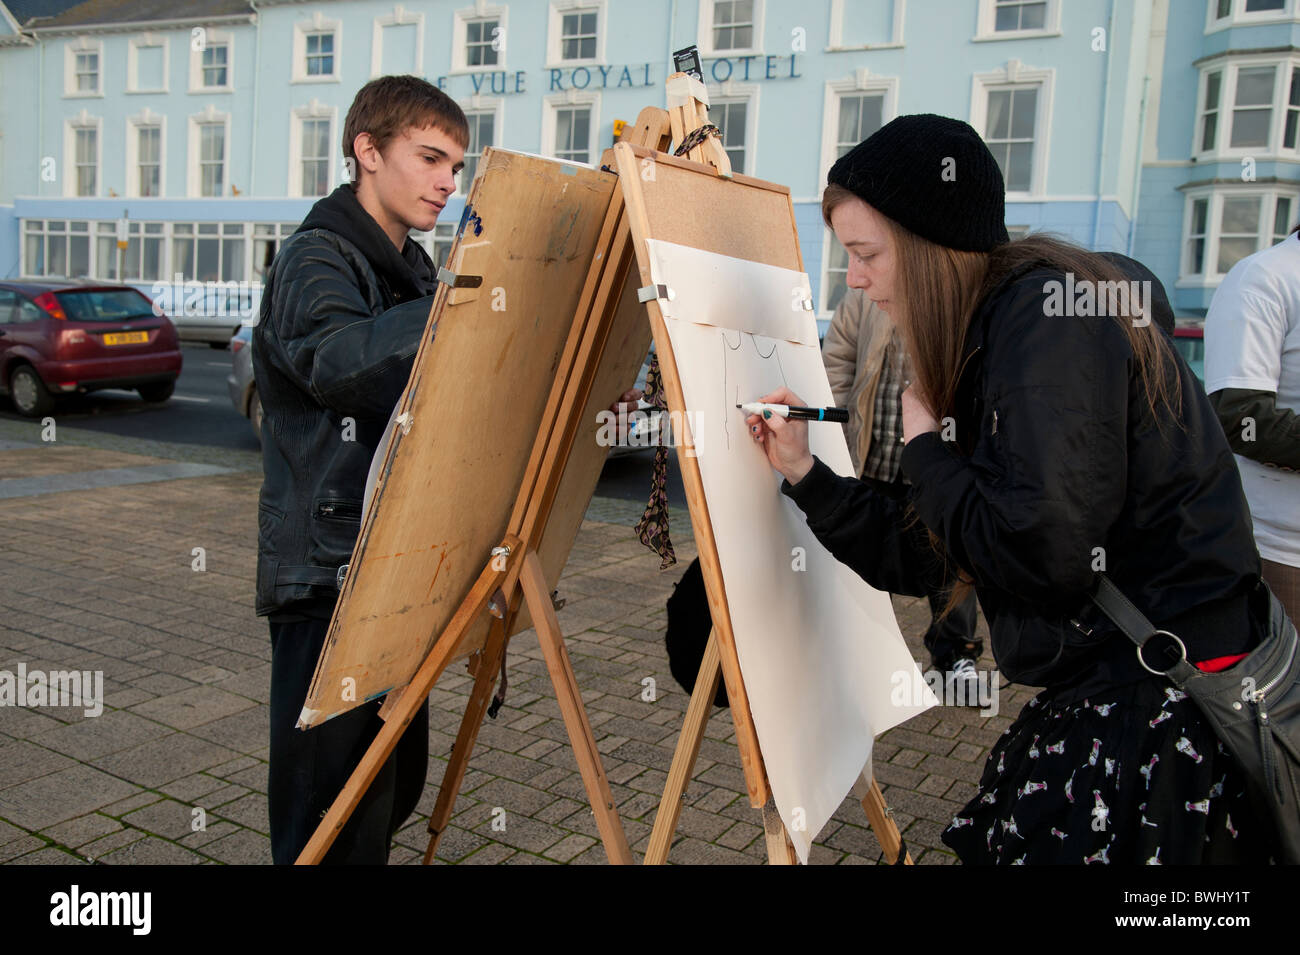 Aberystwyth estudiantes universitarios evento proyecto de arte al aire libre en el paseo marítimo, Gales, Reino Unido Foto de stock